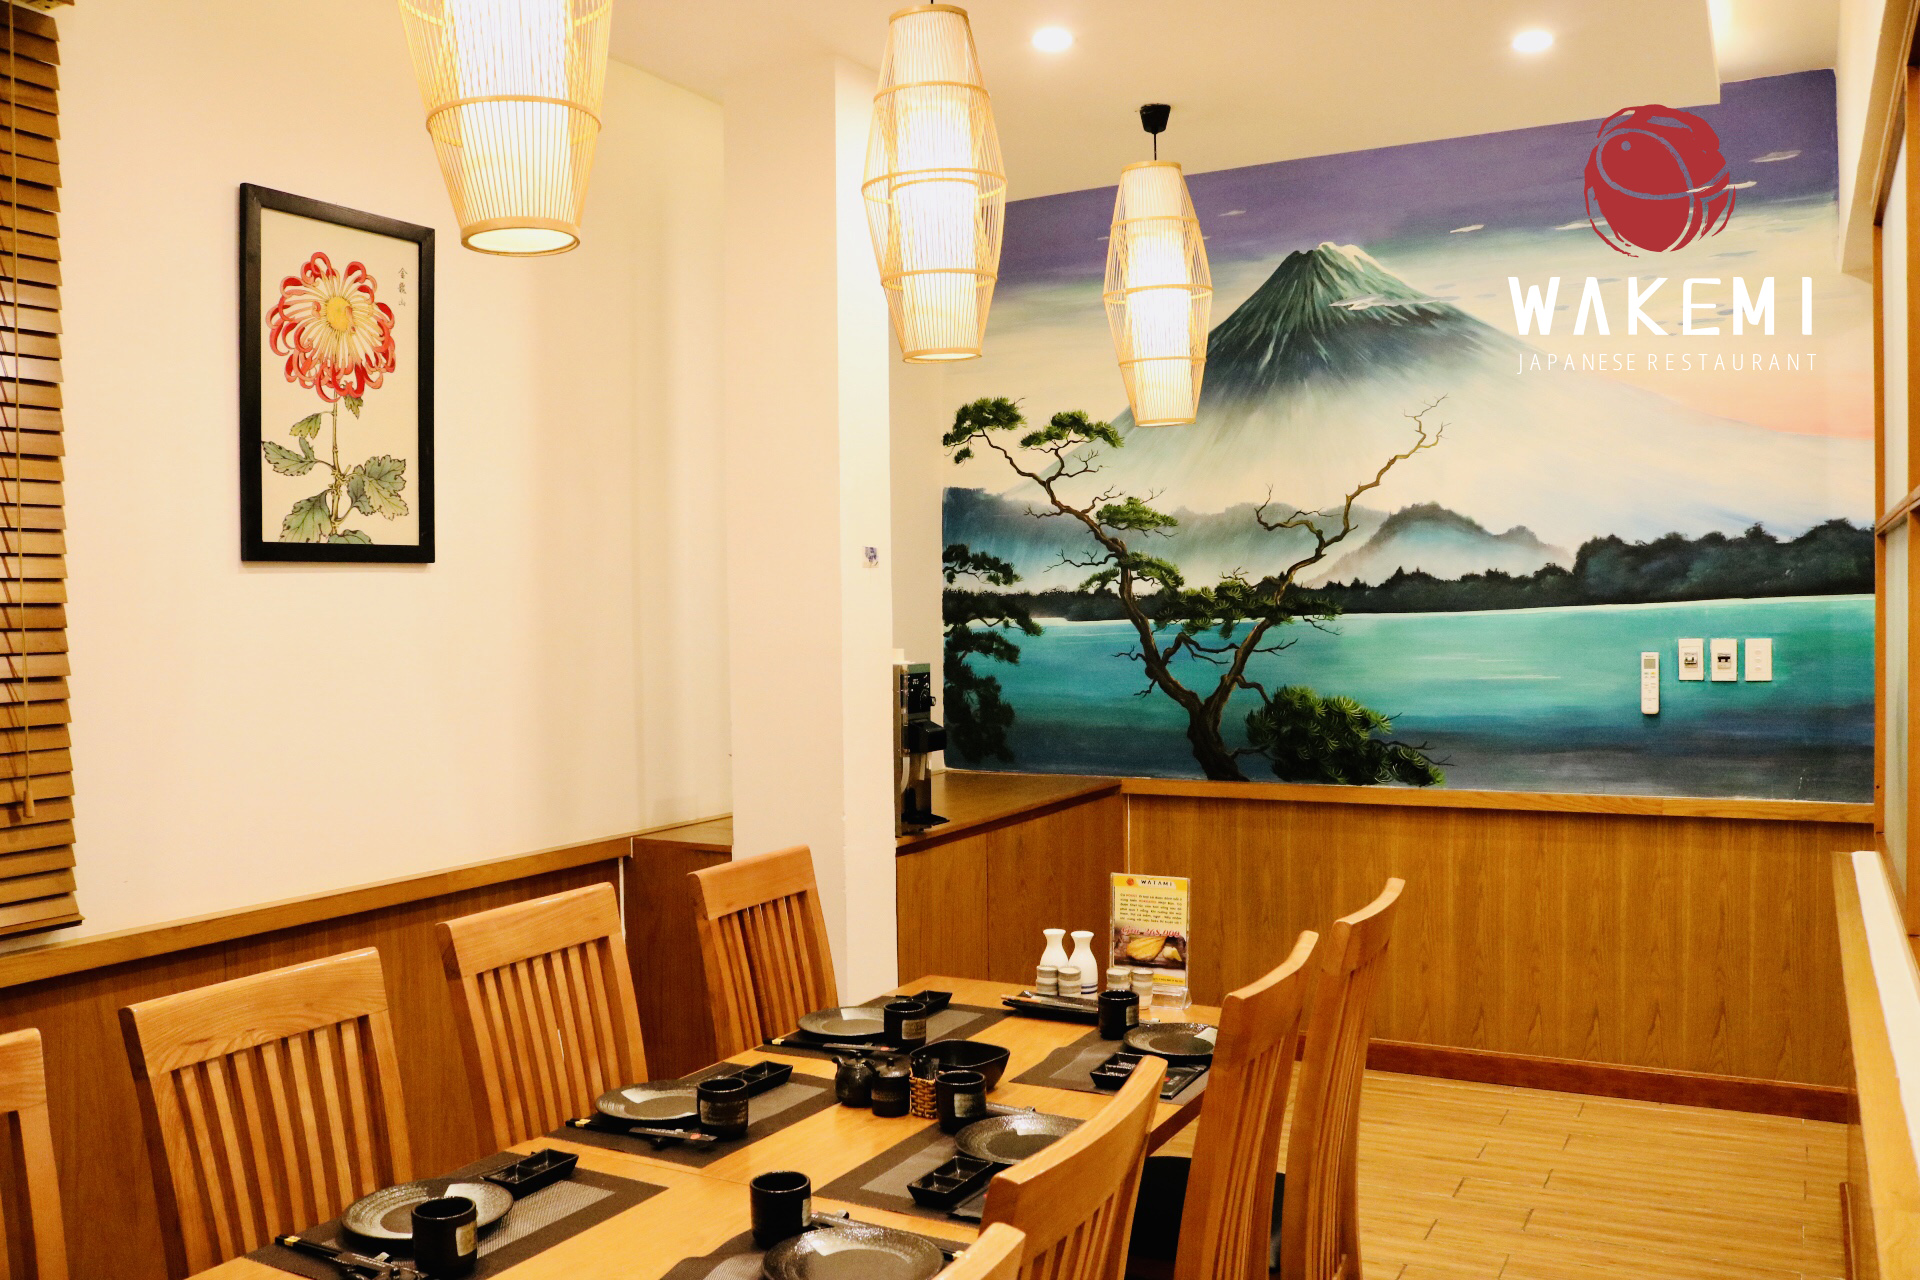 Phòng VIP 1 - Nhà hàng Wakemi